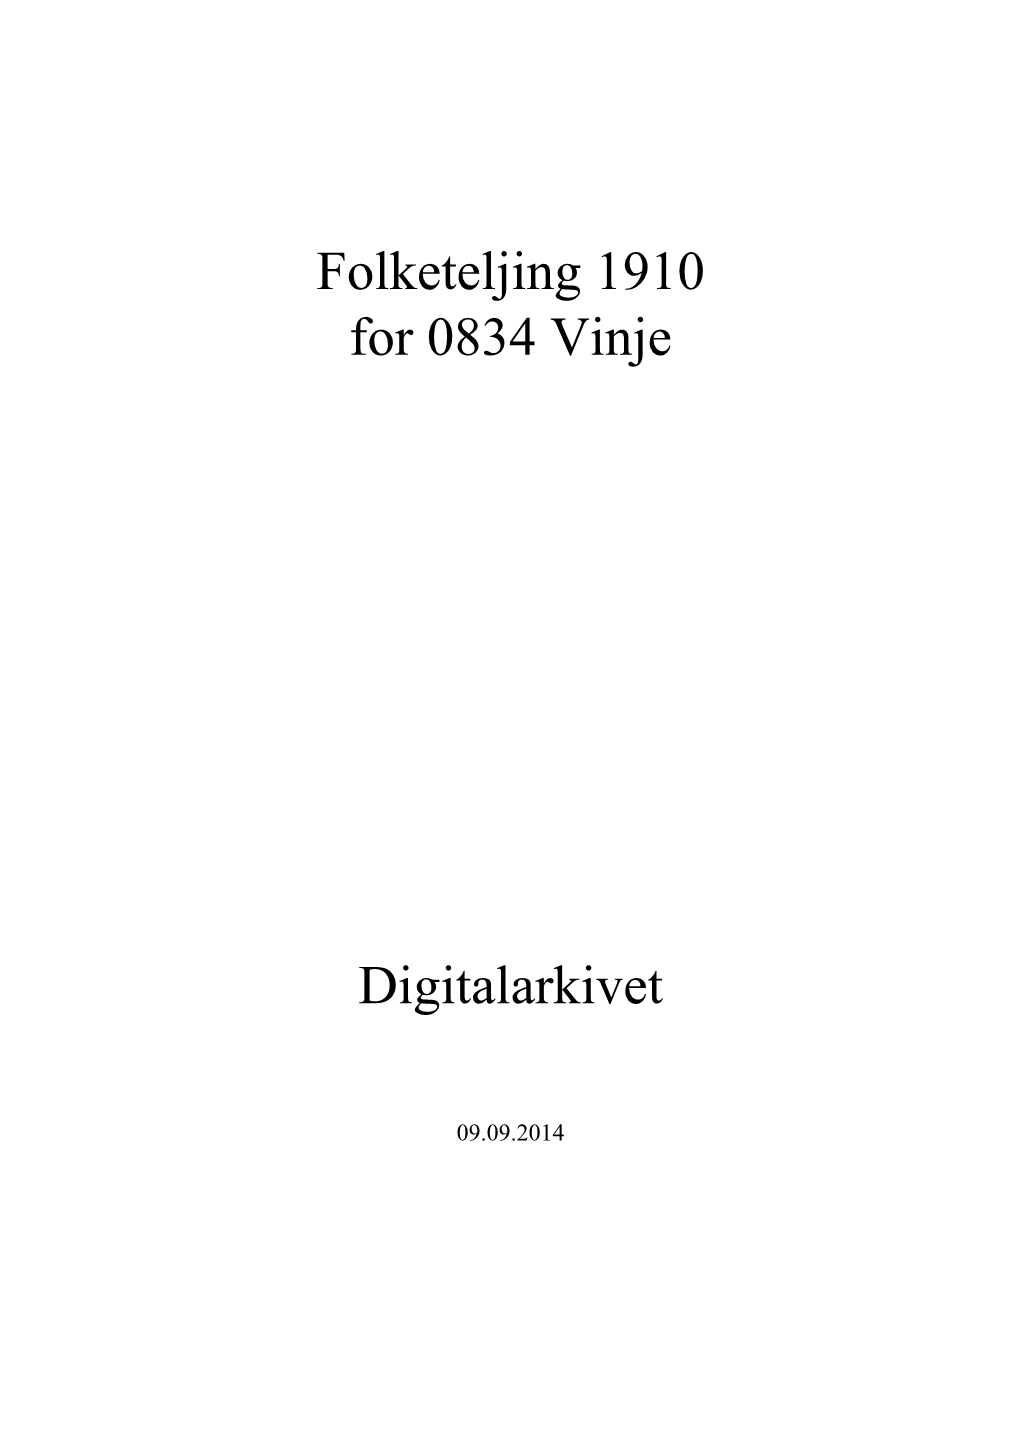 Folketeljing 1910 for 0834 Vinje Digitalarkivet